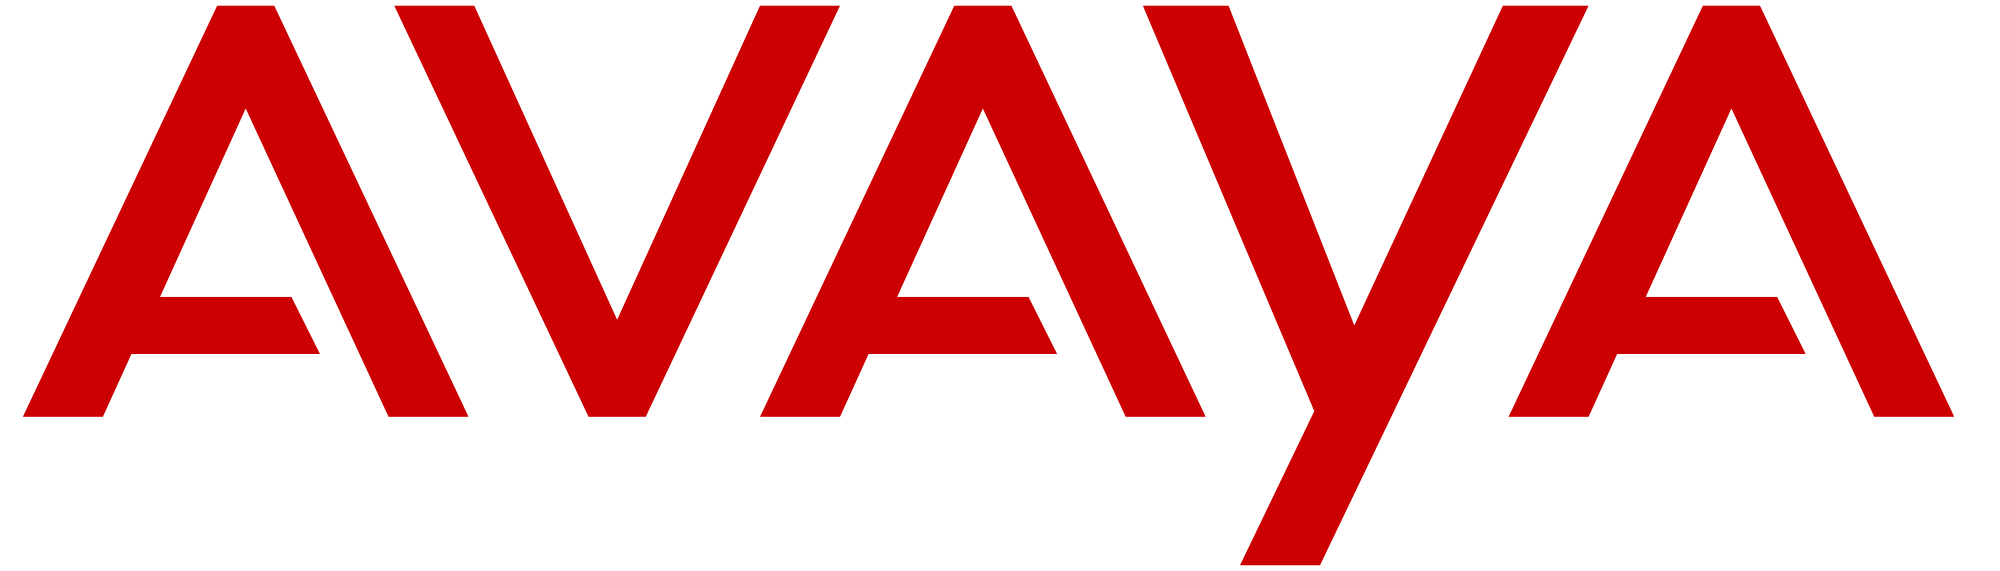 avaya_logo.png